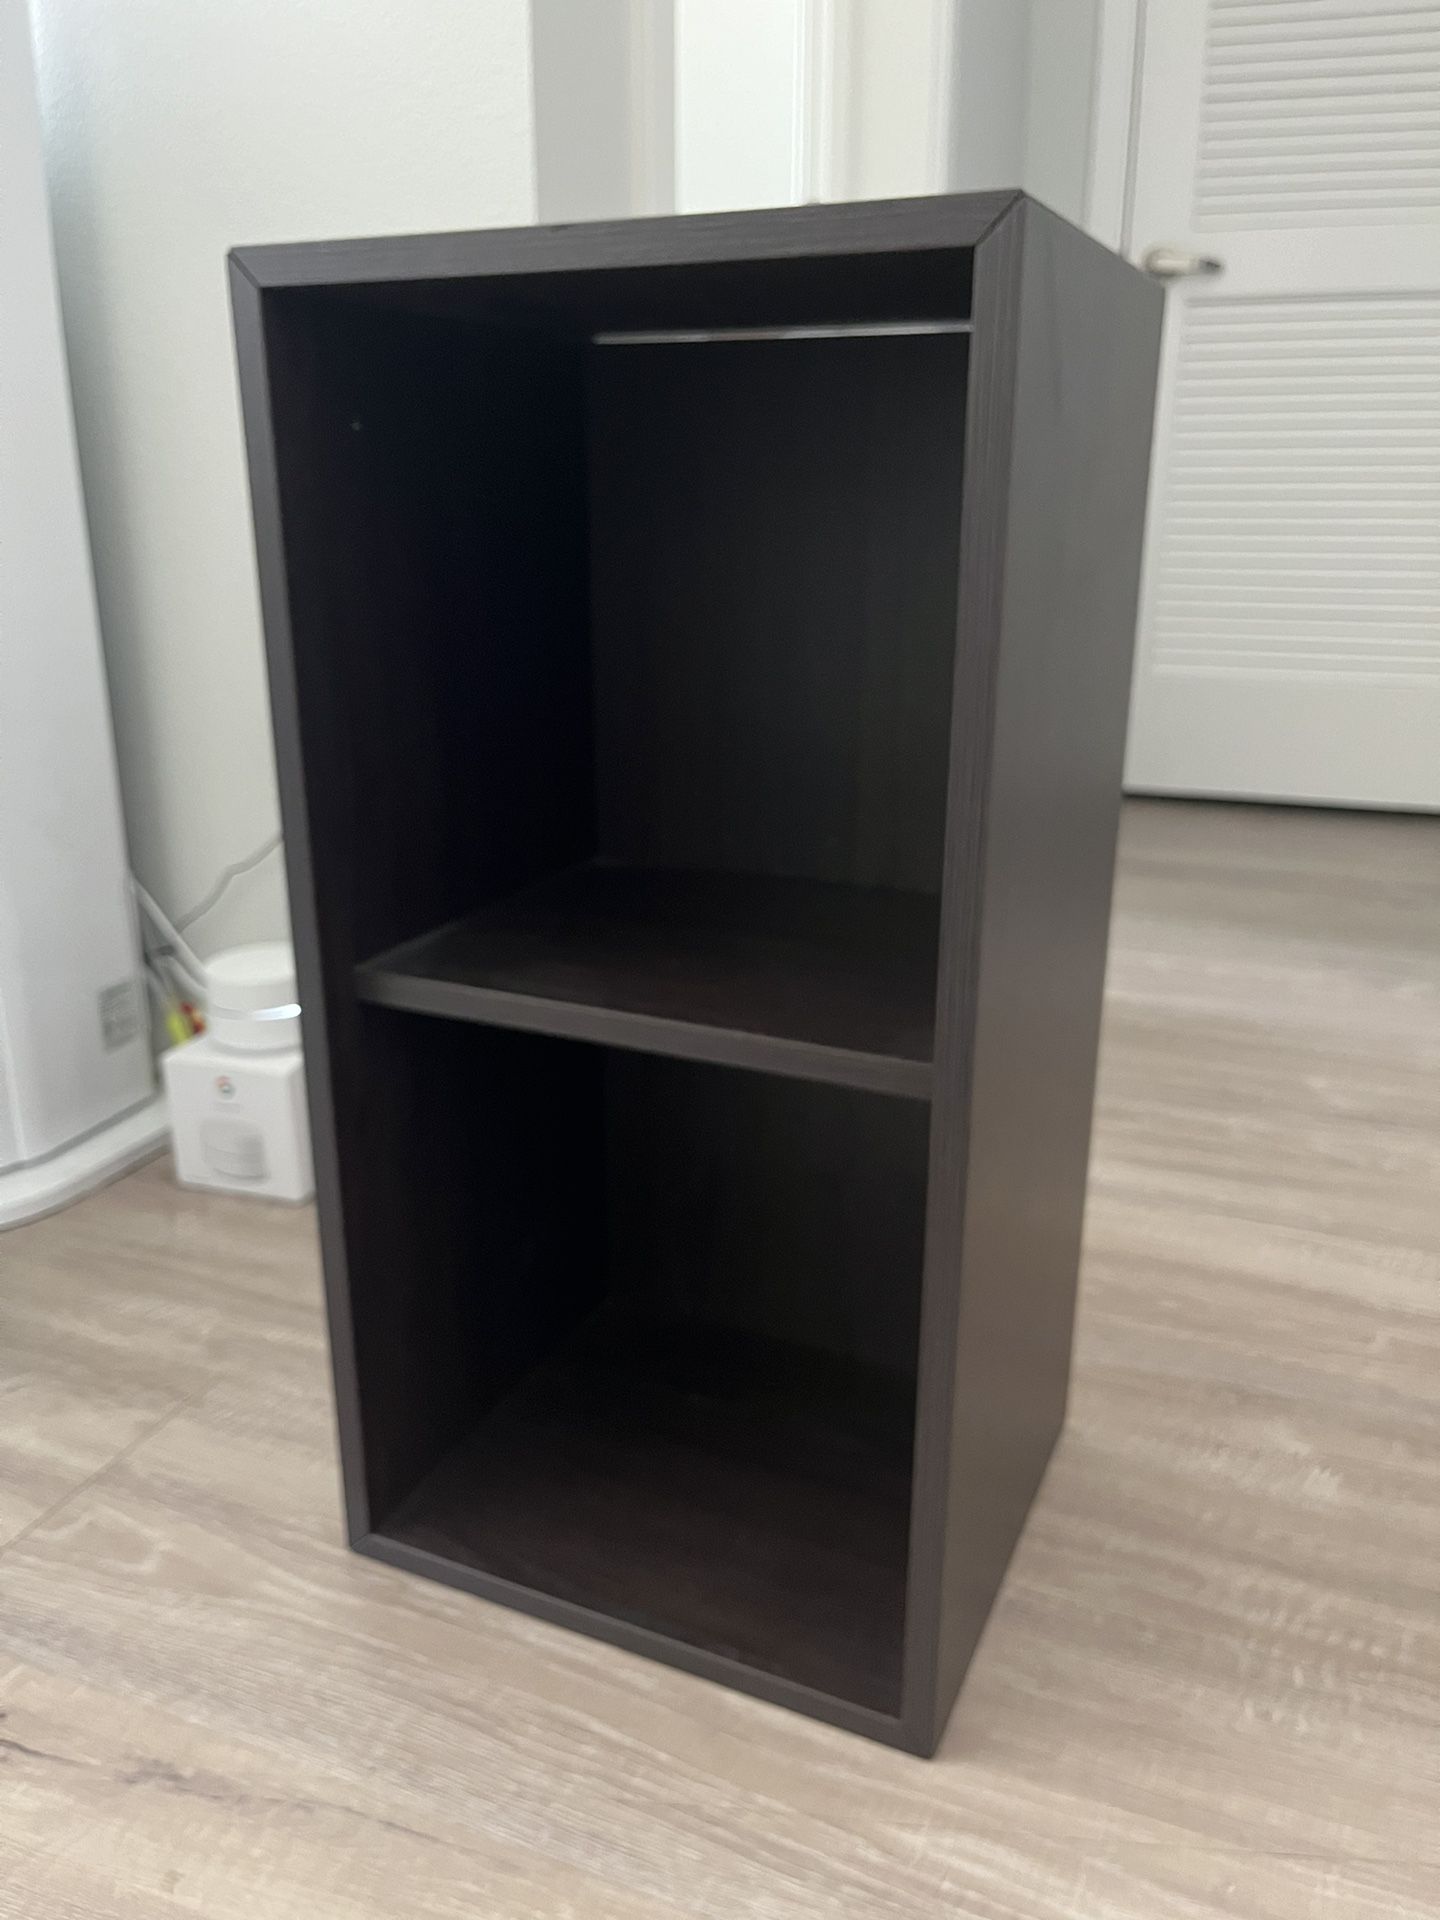 Ikea Two-Tier Shelf / Storage